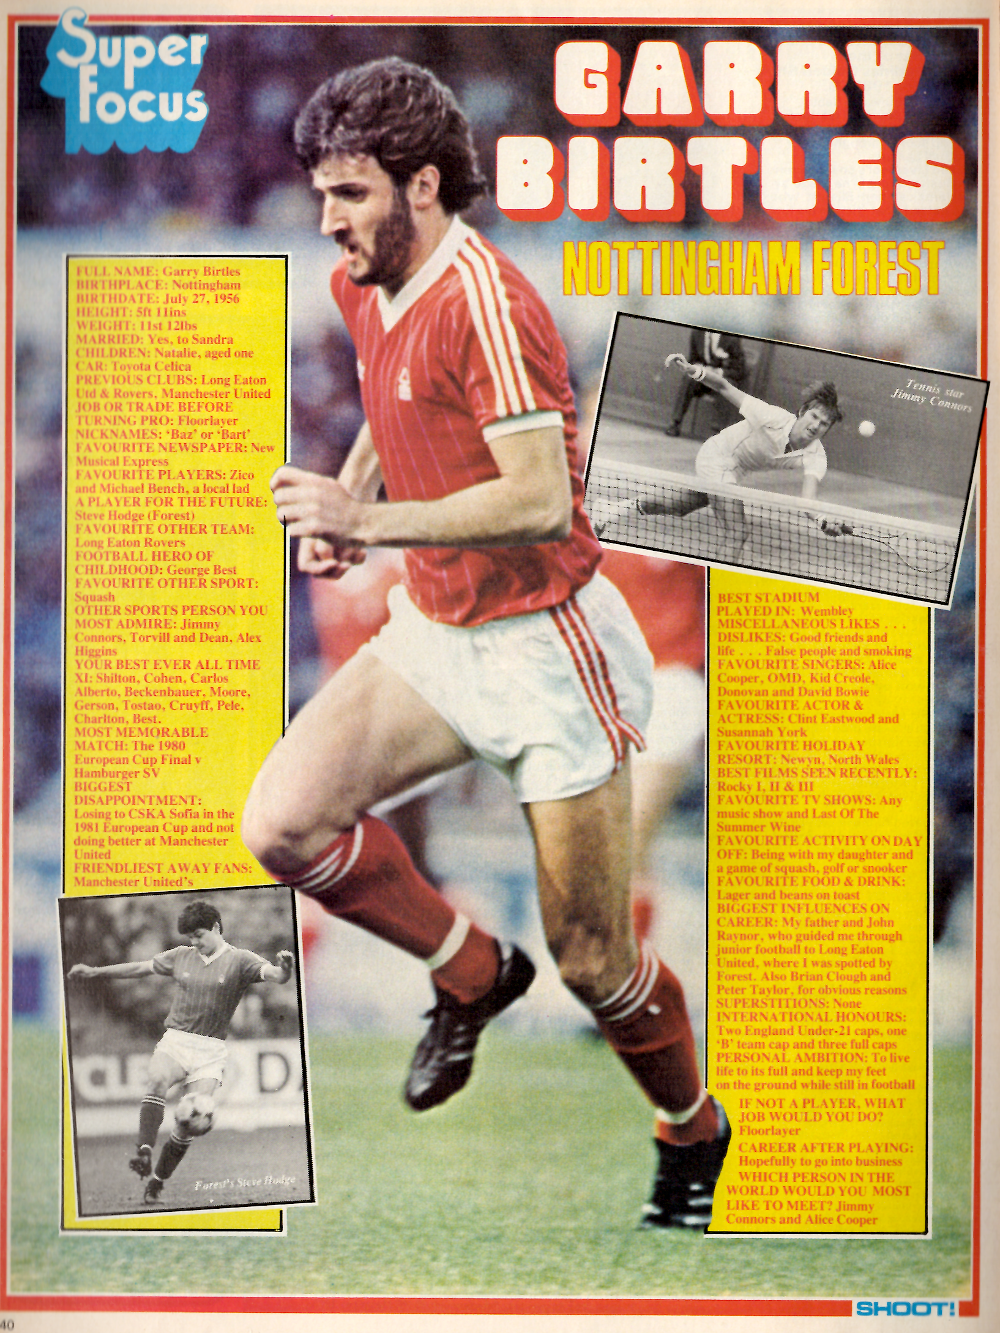 TOPPS-1981-FOOTBALLERS #072-MANCHESTER UTD & ENGLAND-NOTTM FOREST-GARY BIRTLES 